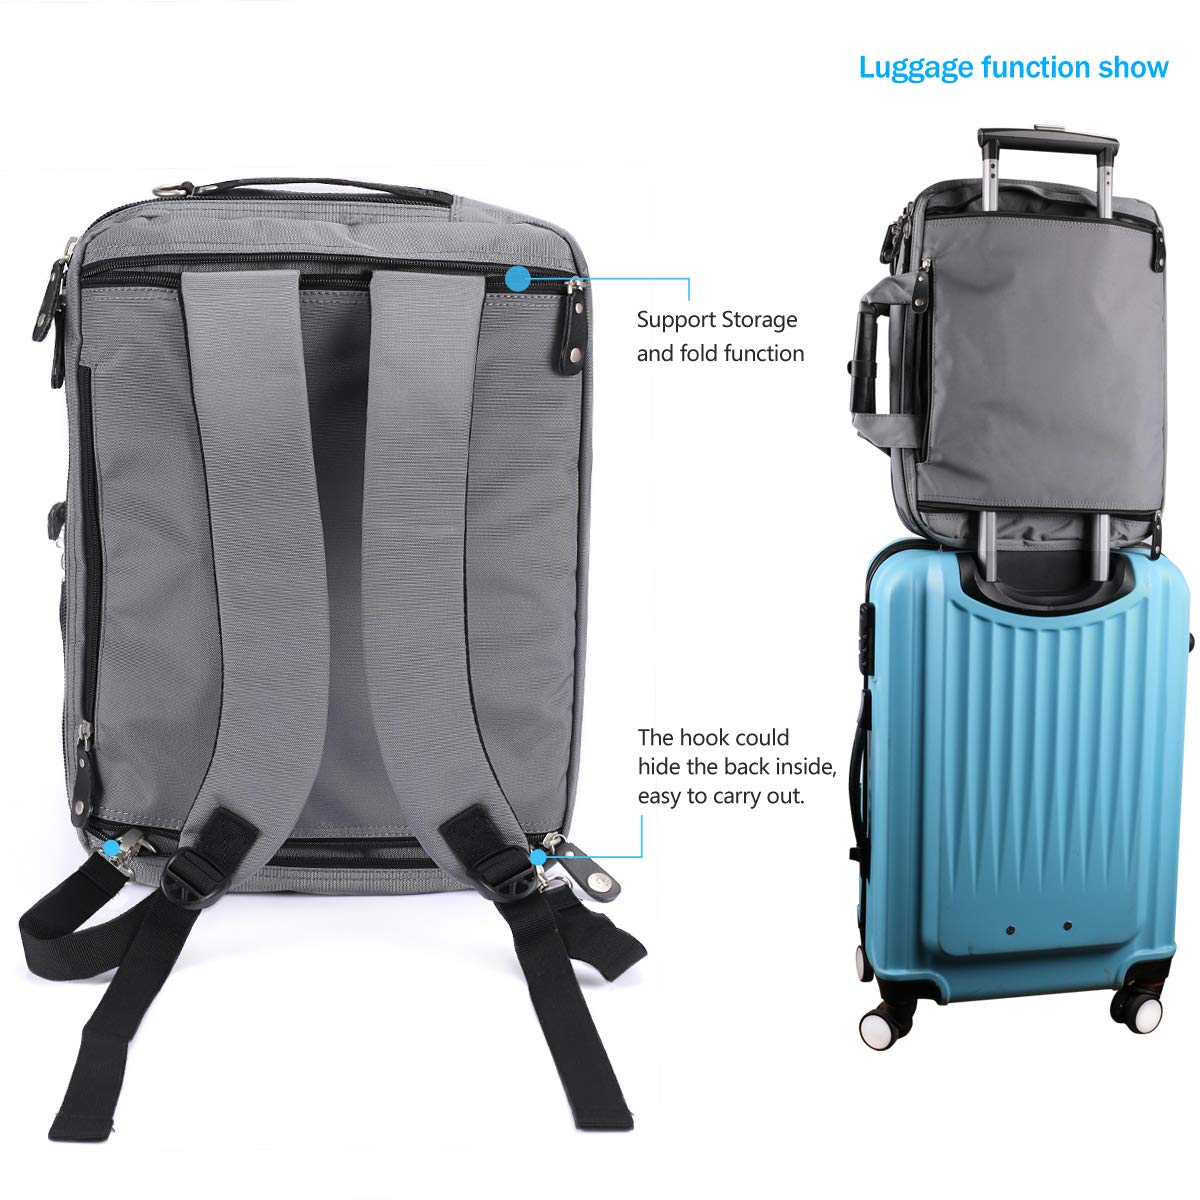 FreeBiz 18.4 Inch Laptop Briefcase Backpack Messenger Shoulder Bag 18 Inch Gaming Notebook Computer Case Handbag for Business Travel